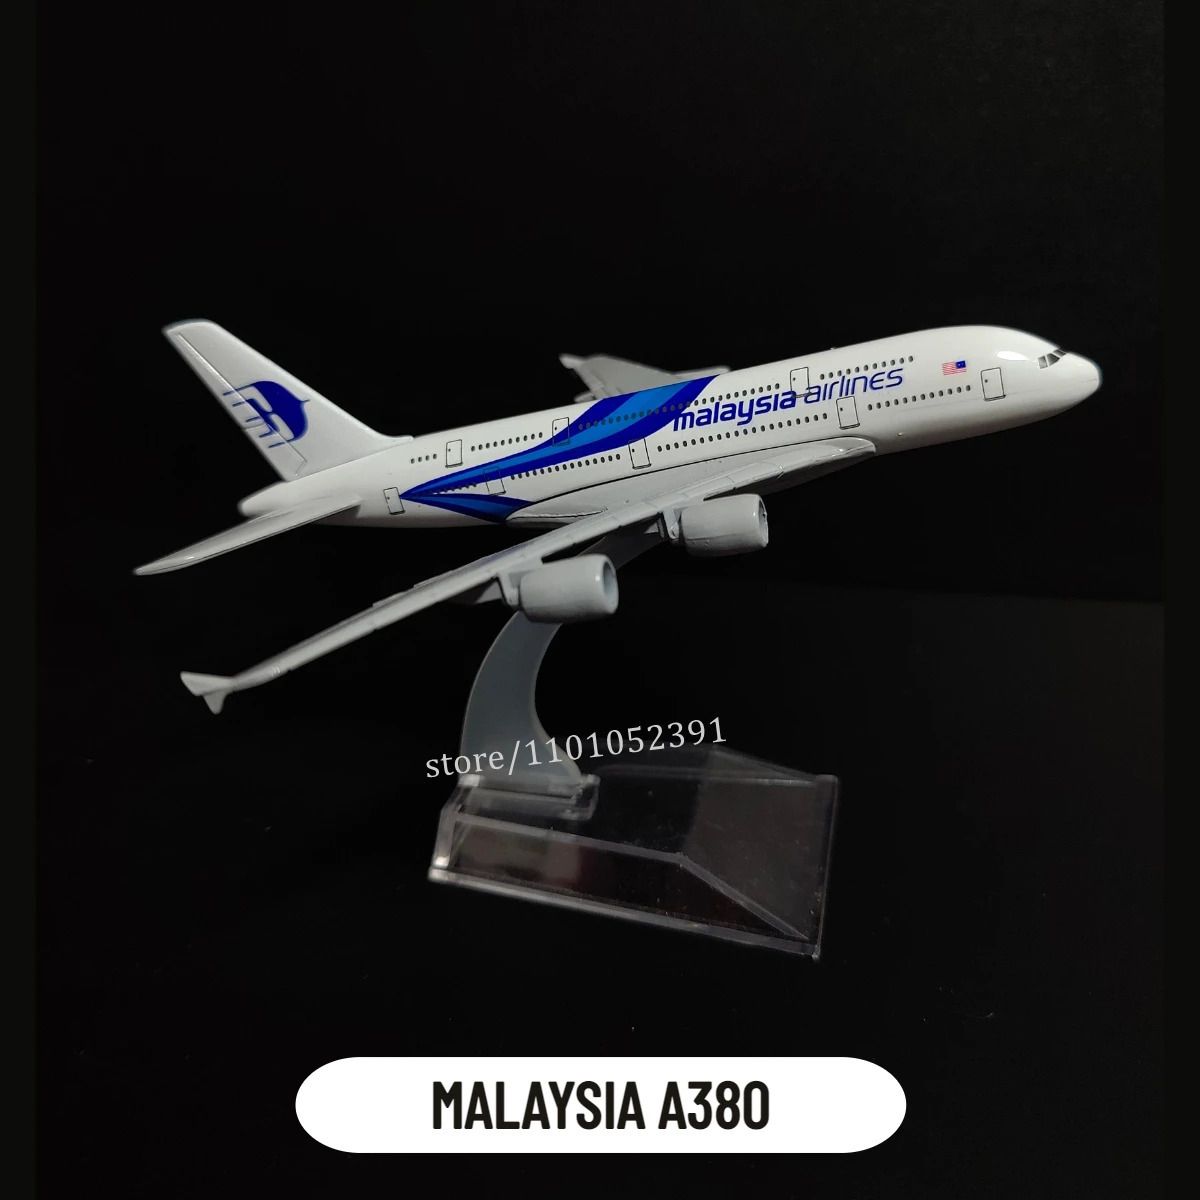 16. Malaysia A380